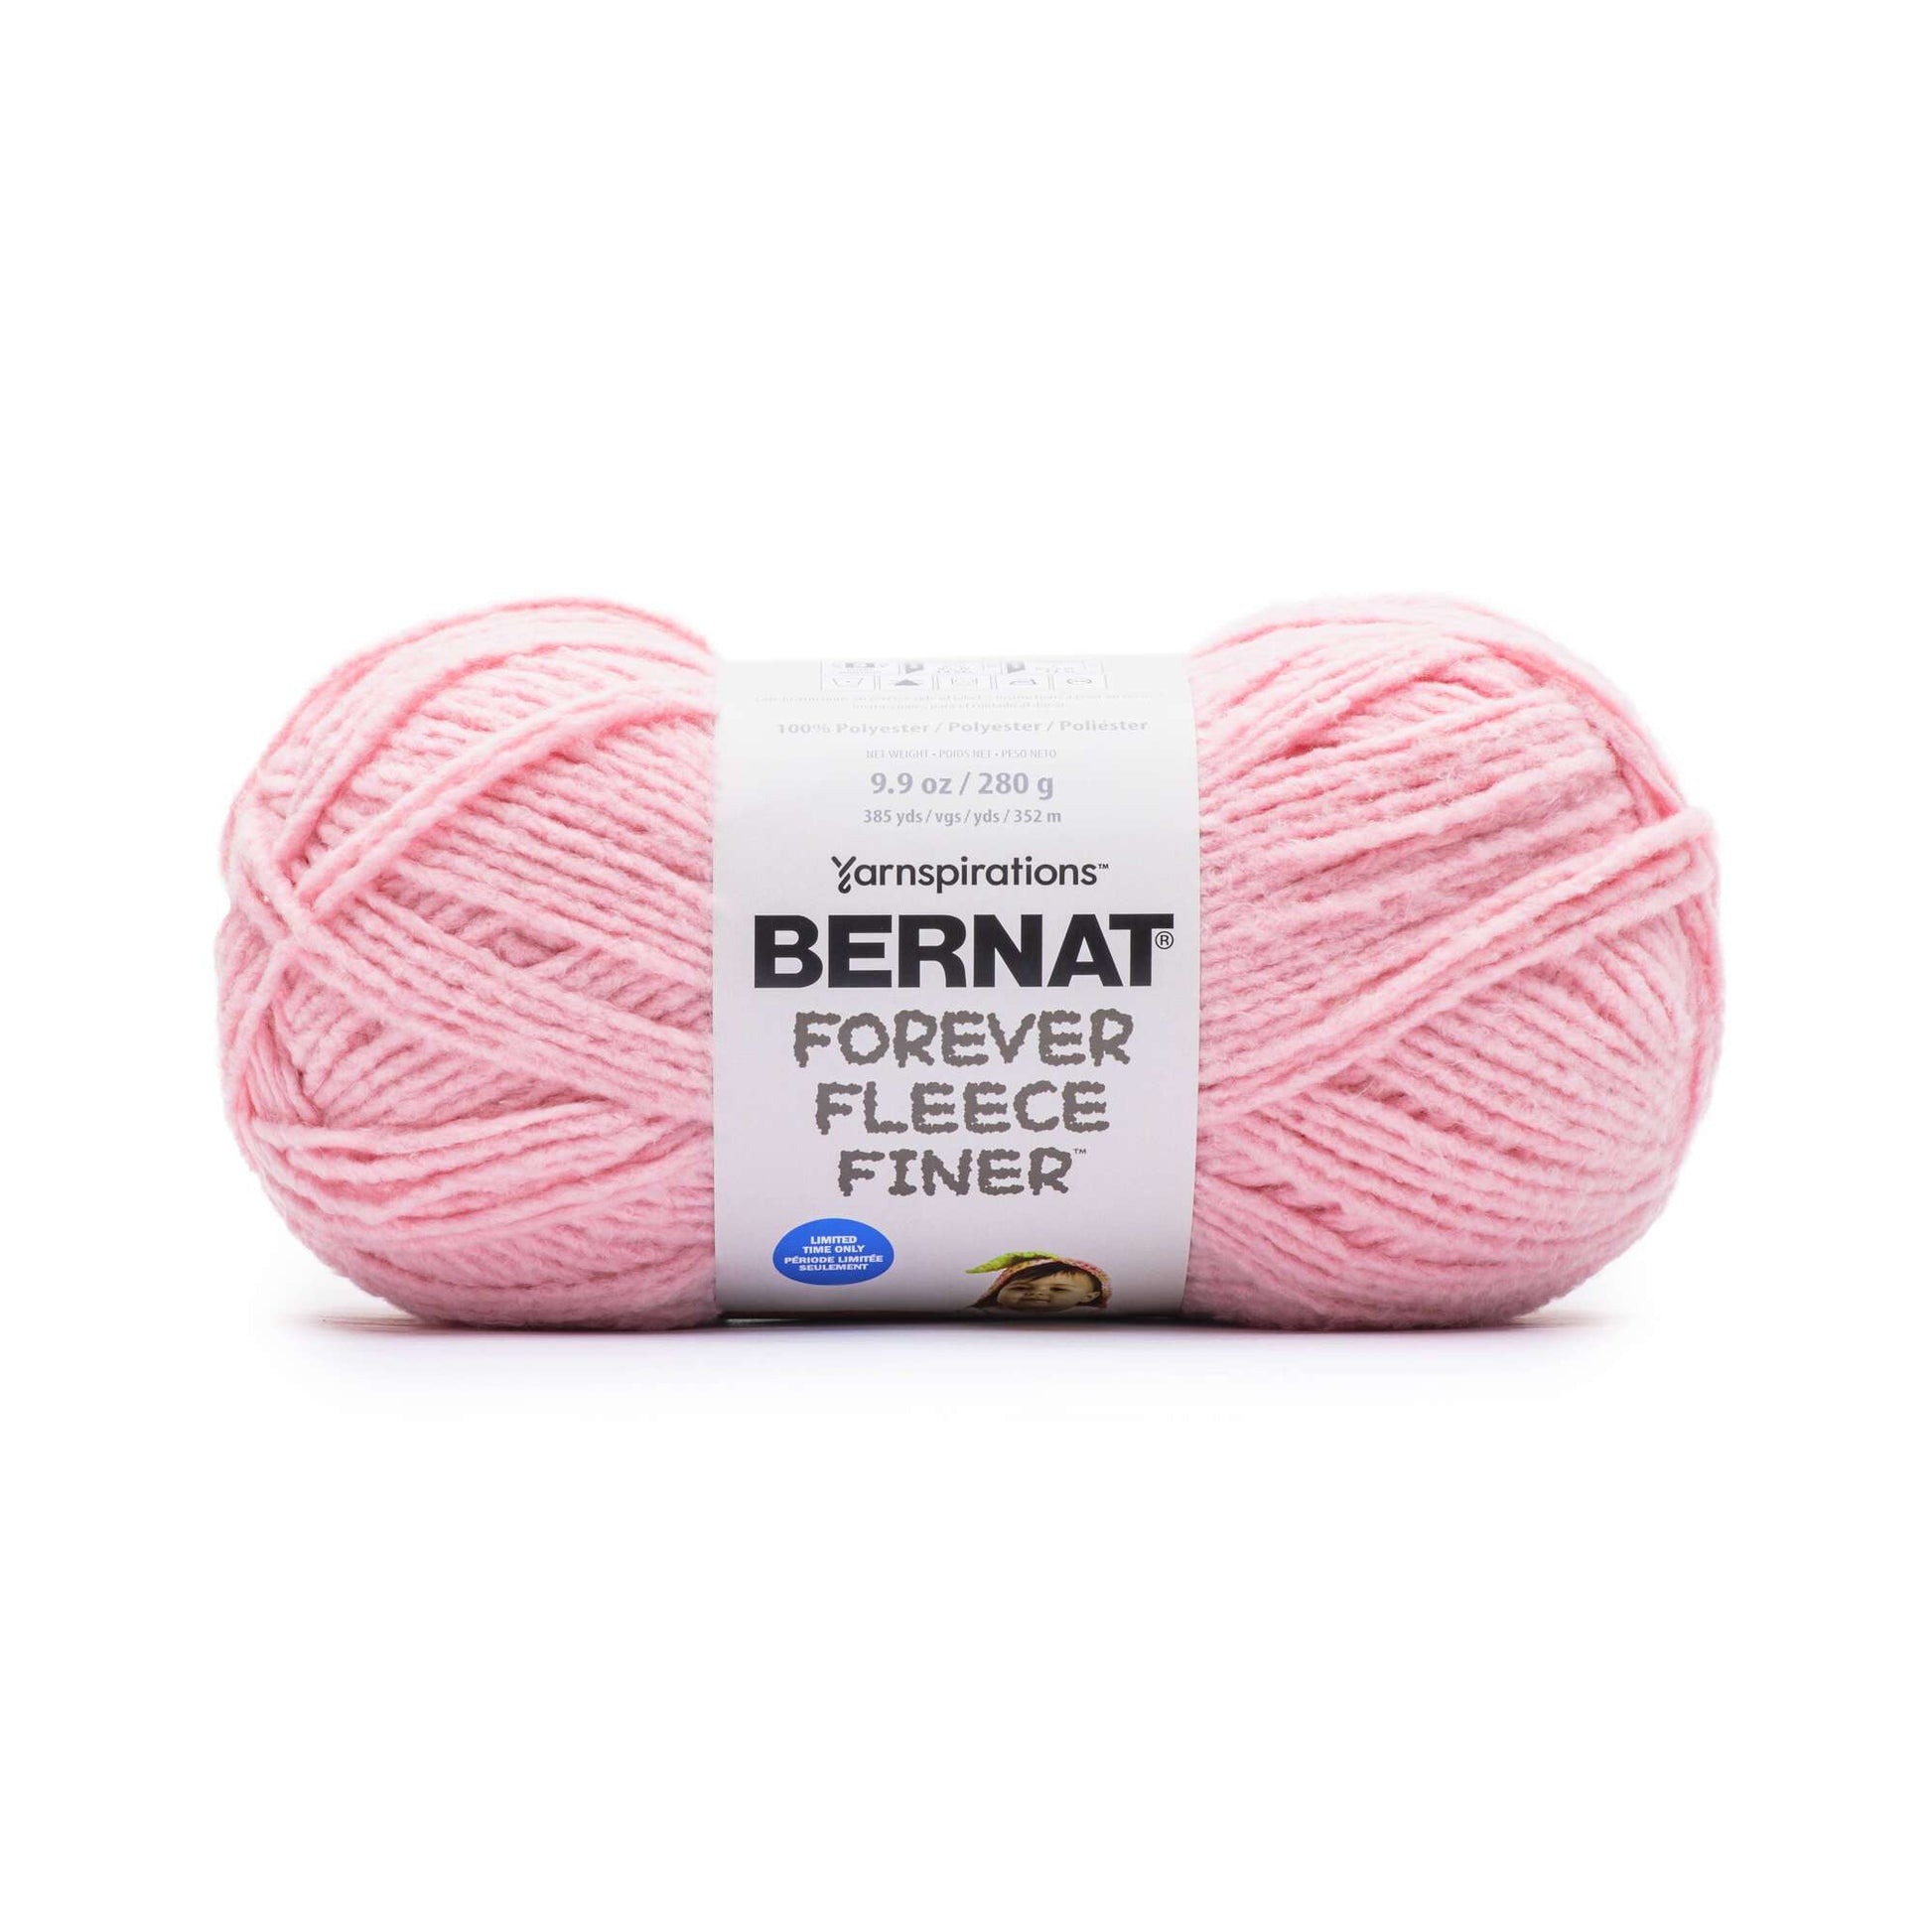 Bernat Forever Fleece Finer Yarn - Discontinued Shades Petal